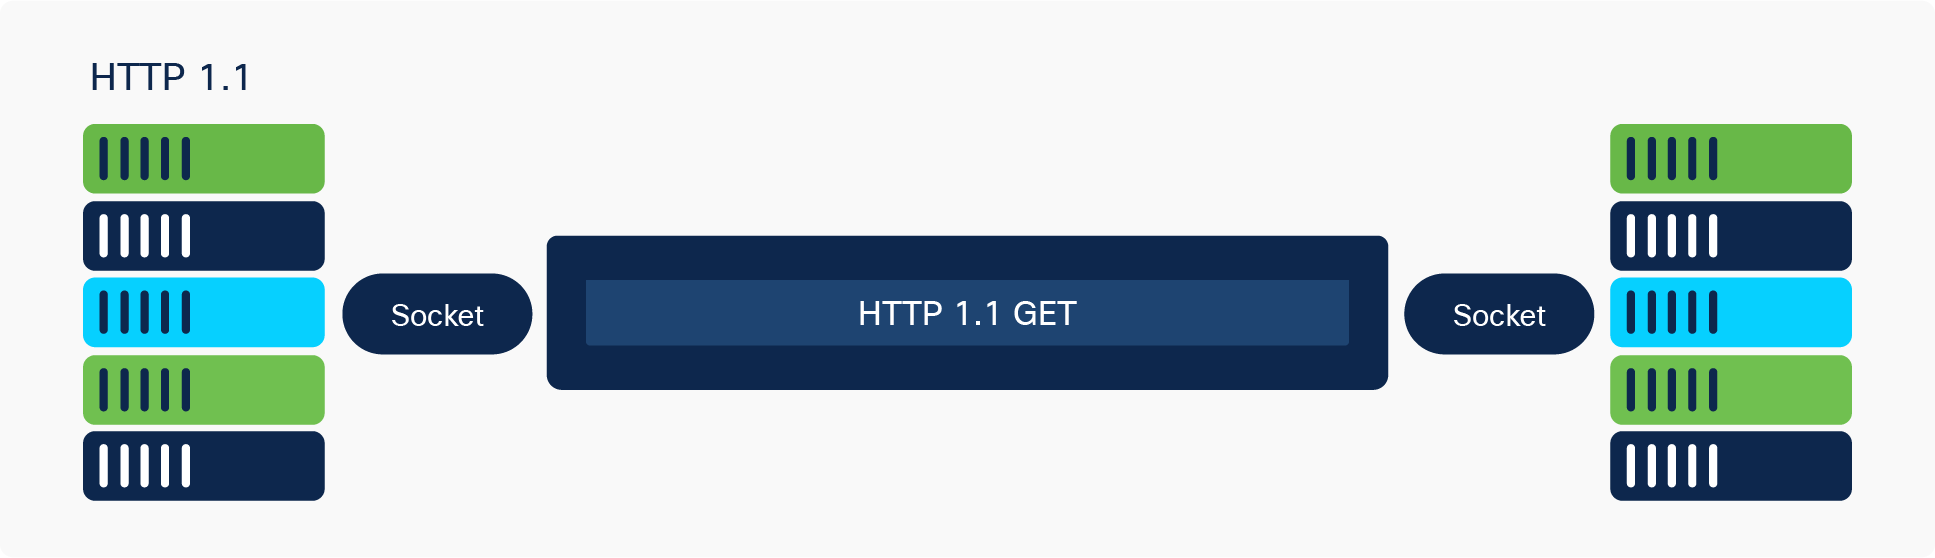 HTTP 1.1 GET